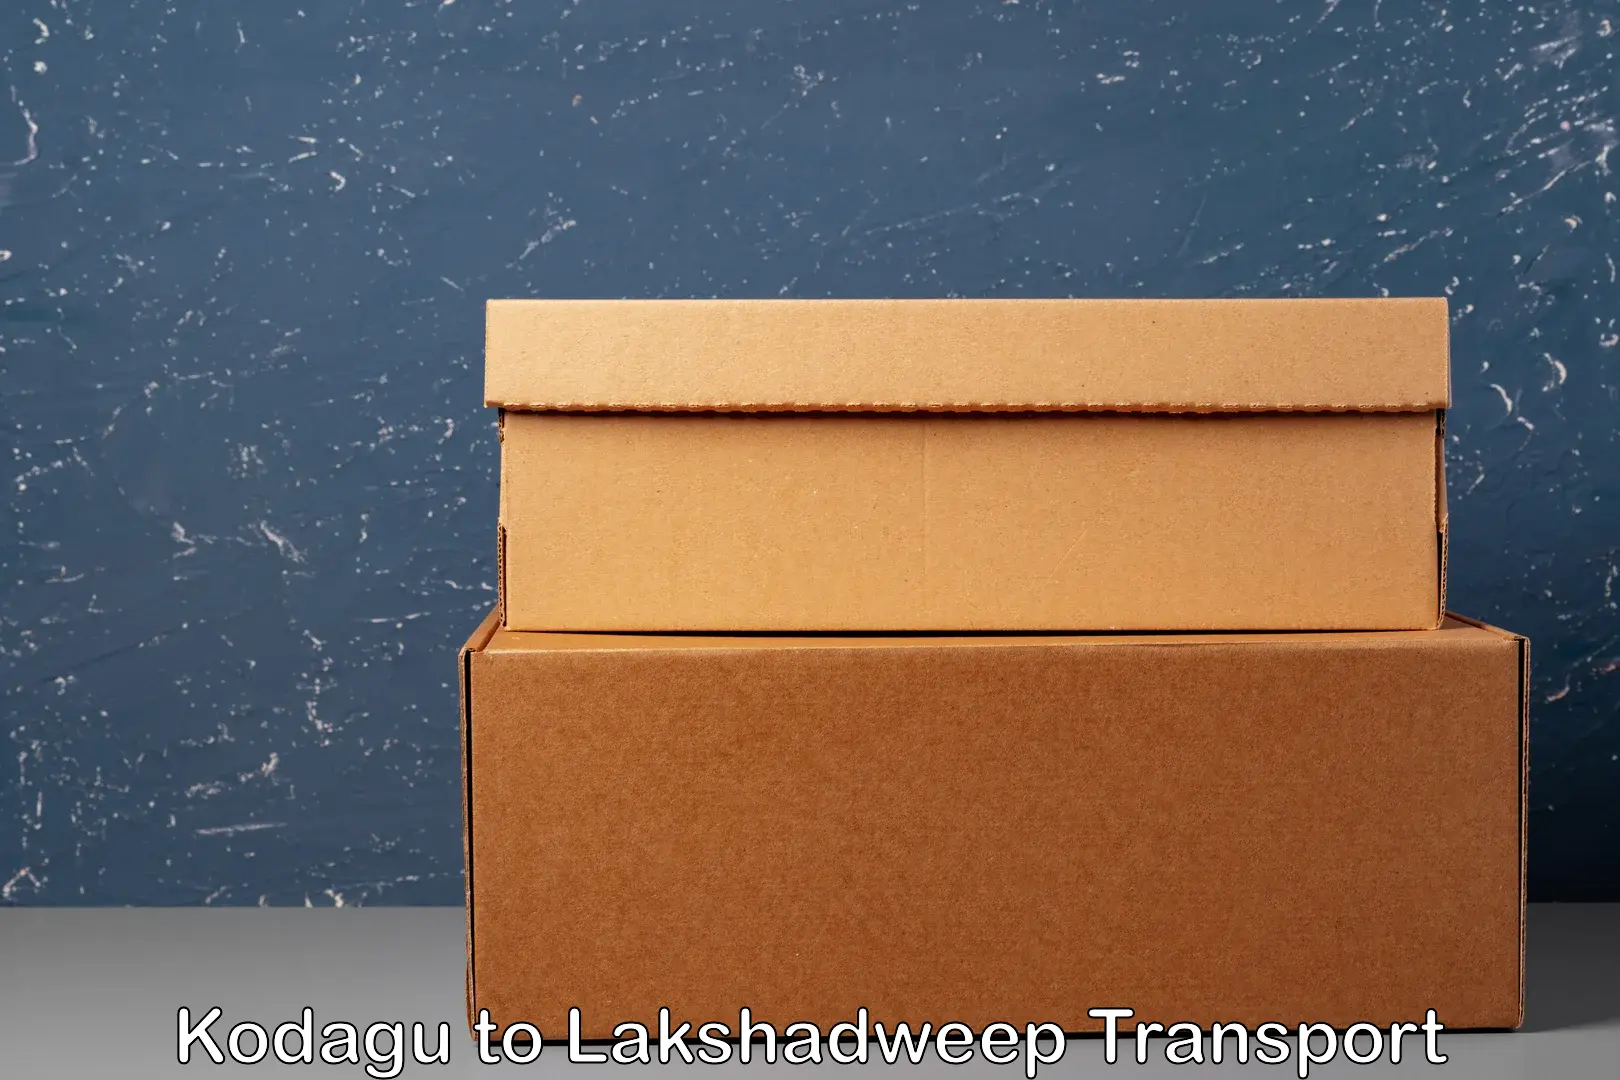 Online transport booking in Kodagu to Lakshadweep